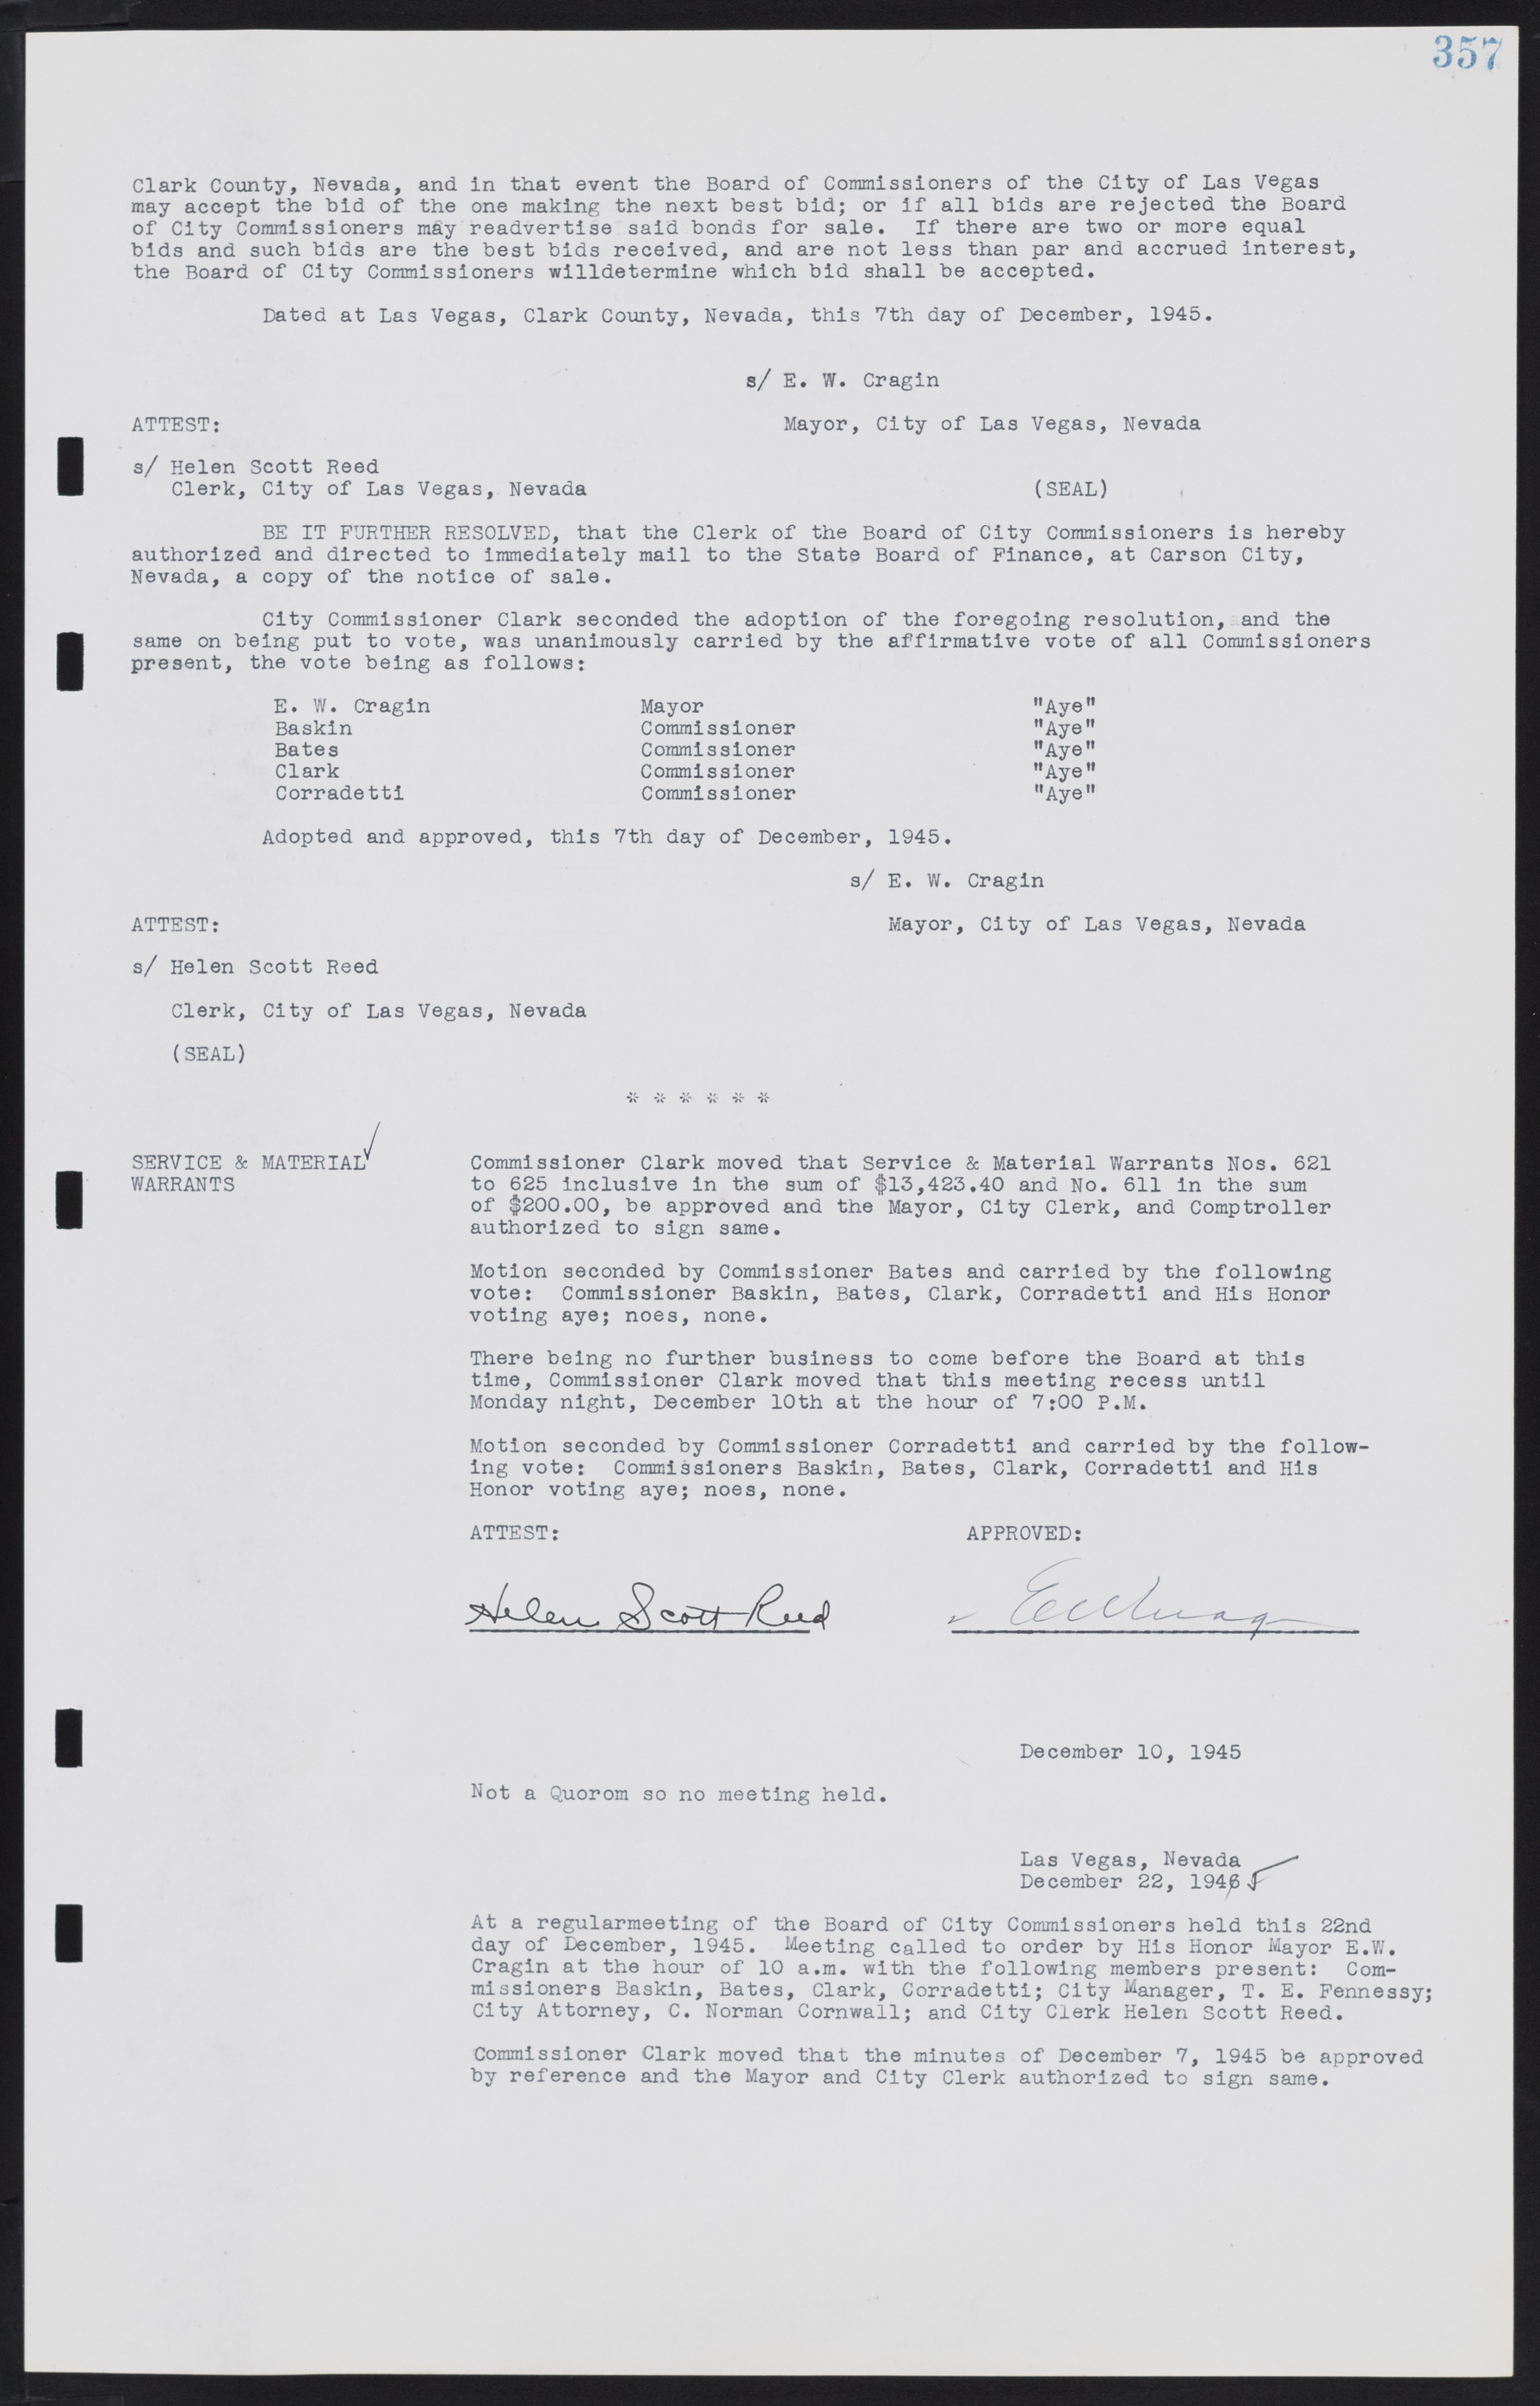 Las Vegas City Commission Minutes, August 11, 1942 to December 30, 1946, lvc000005-382